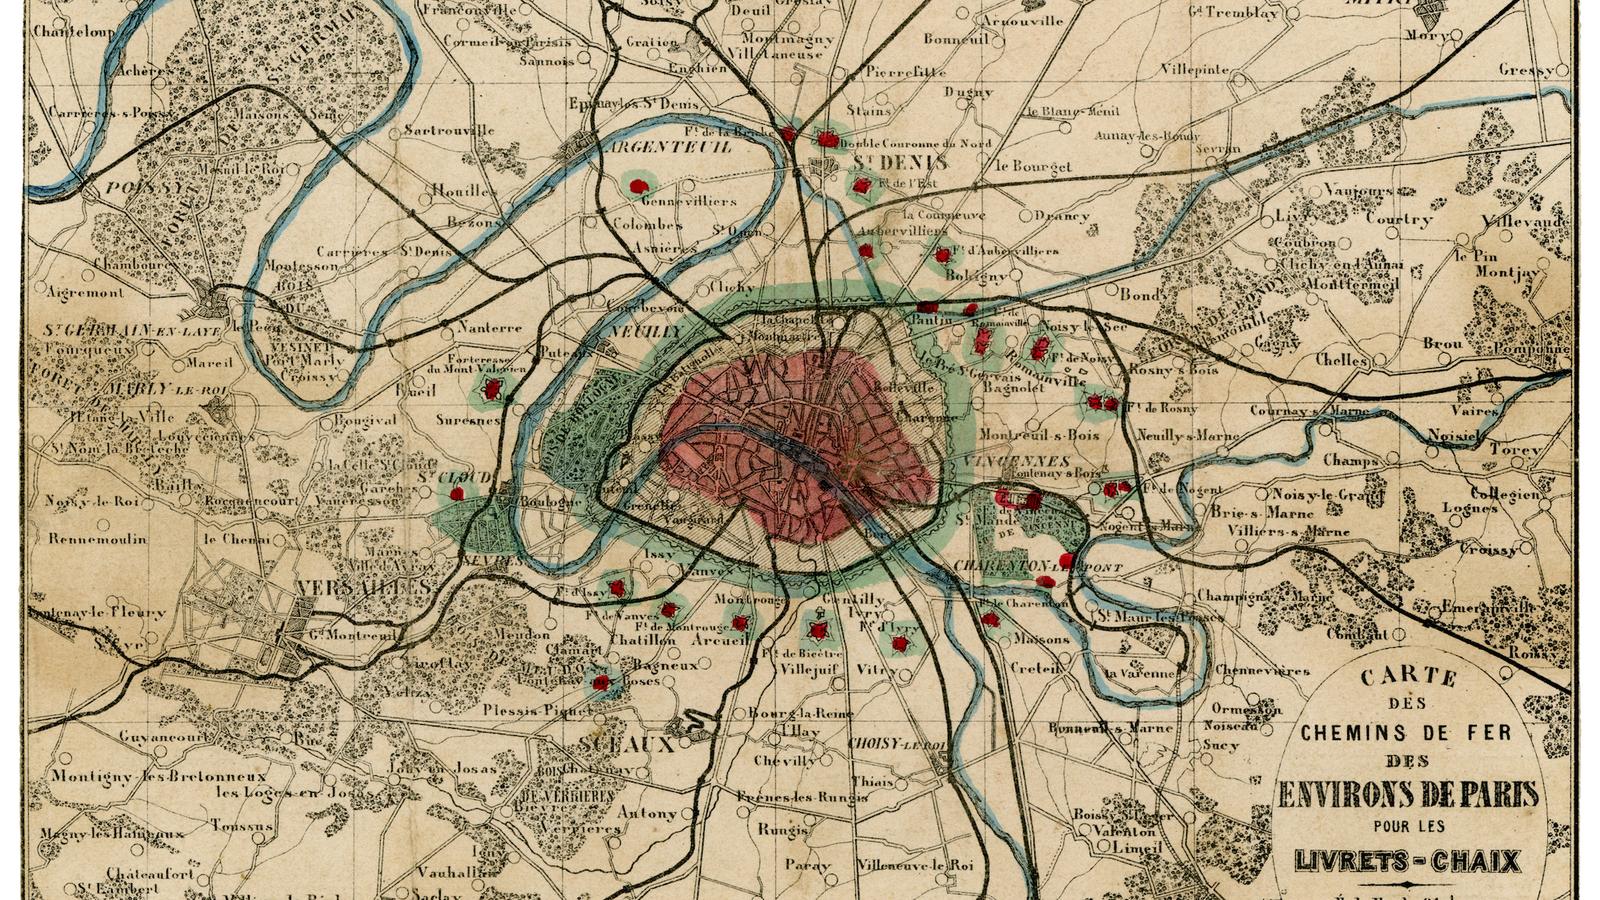 Carte des chemins de fer et des environs de Paris (XIXe siècle)